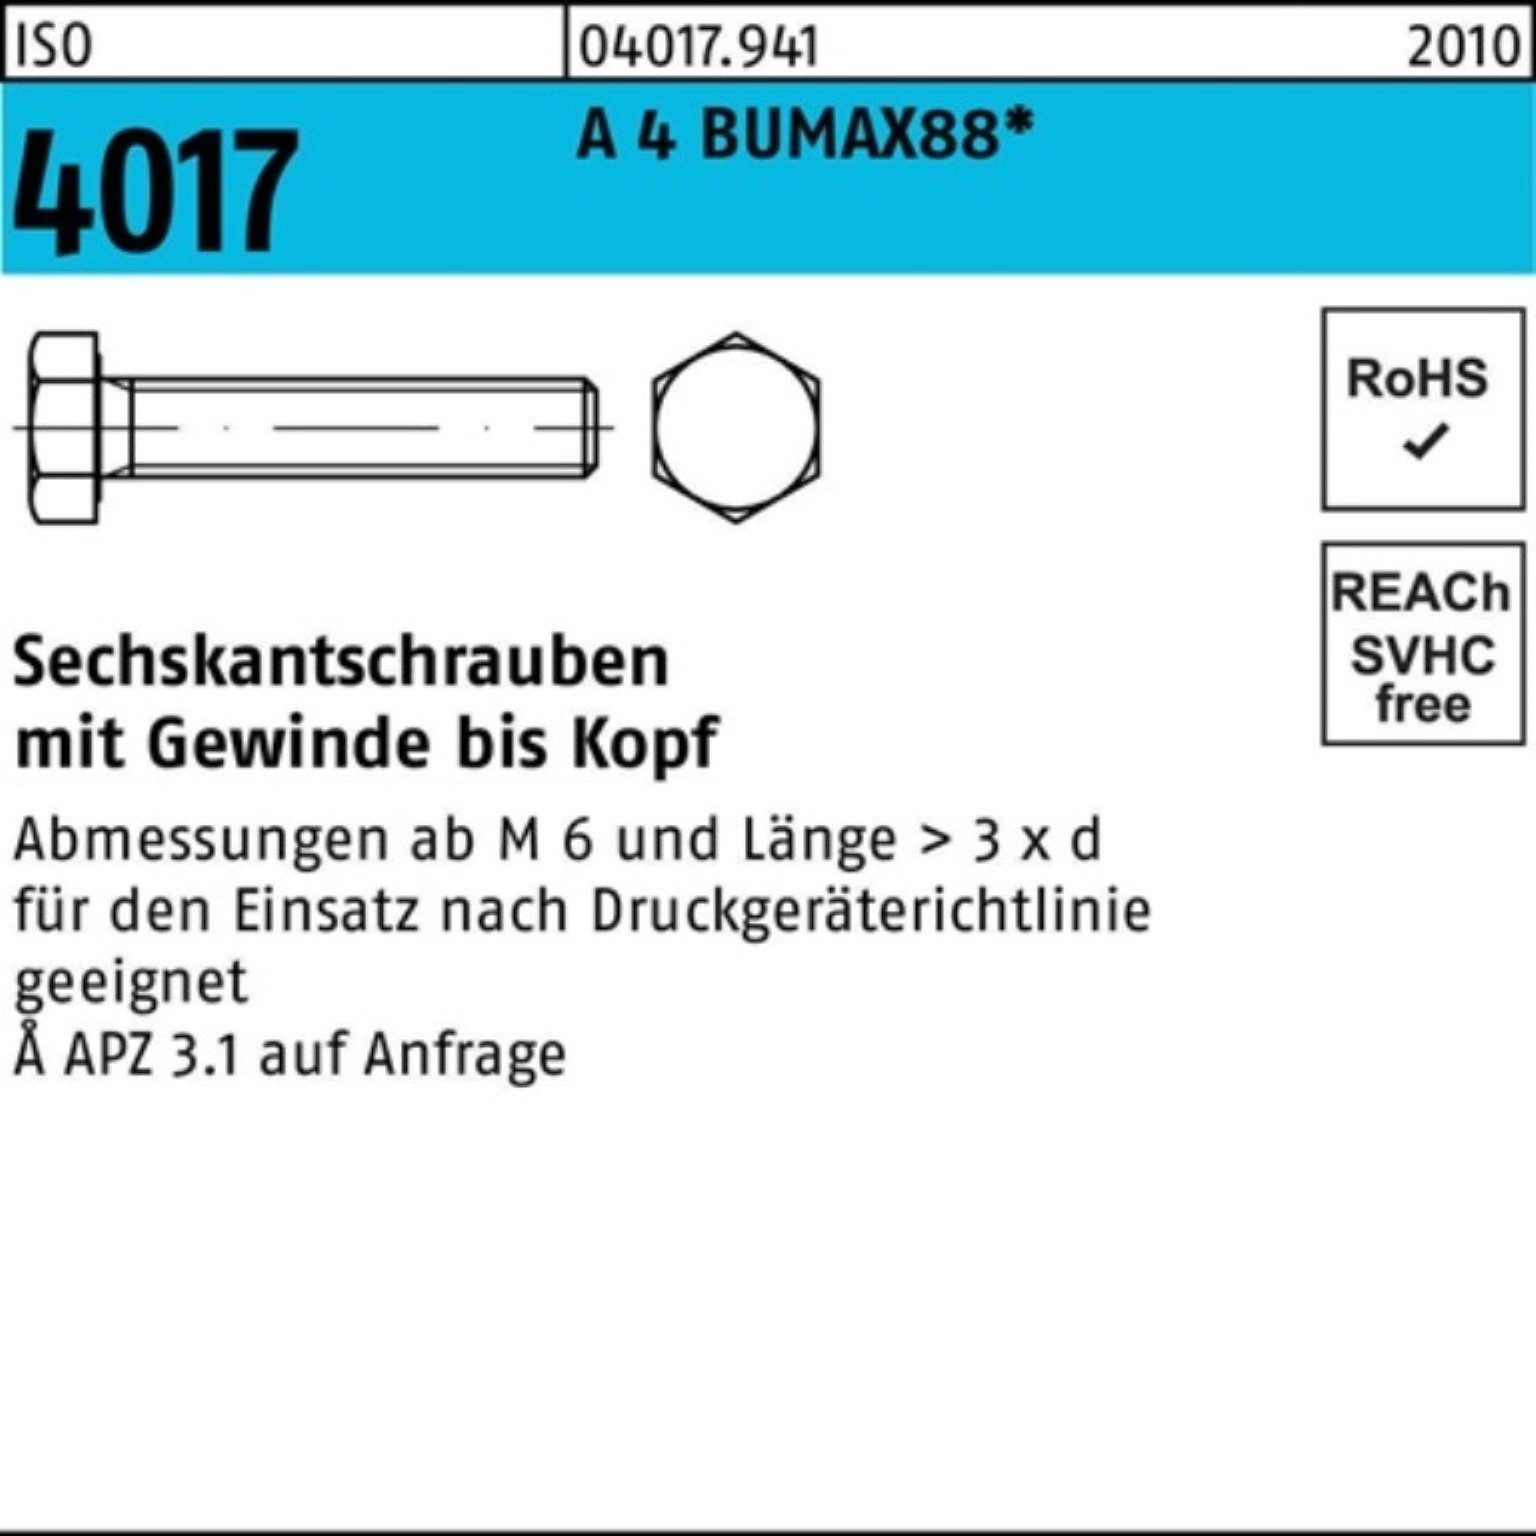 Bufab Sechskantschraube 100er Pack Sechskantschraube ISO 4017 VG M12x 45 A 4 BUMAX88 25 Stück